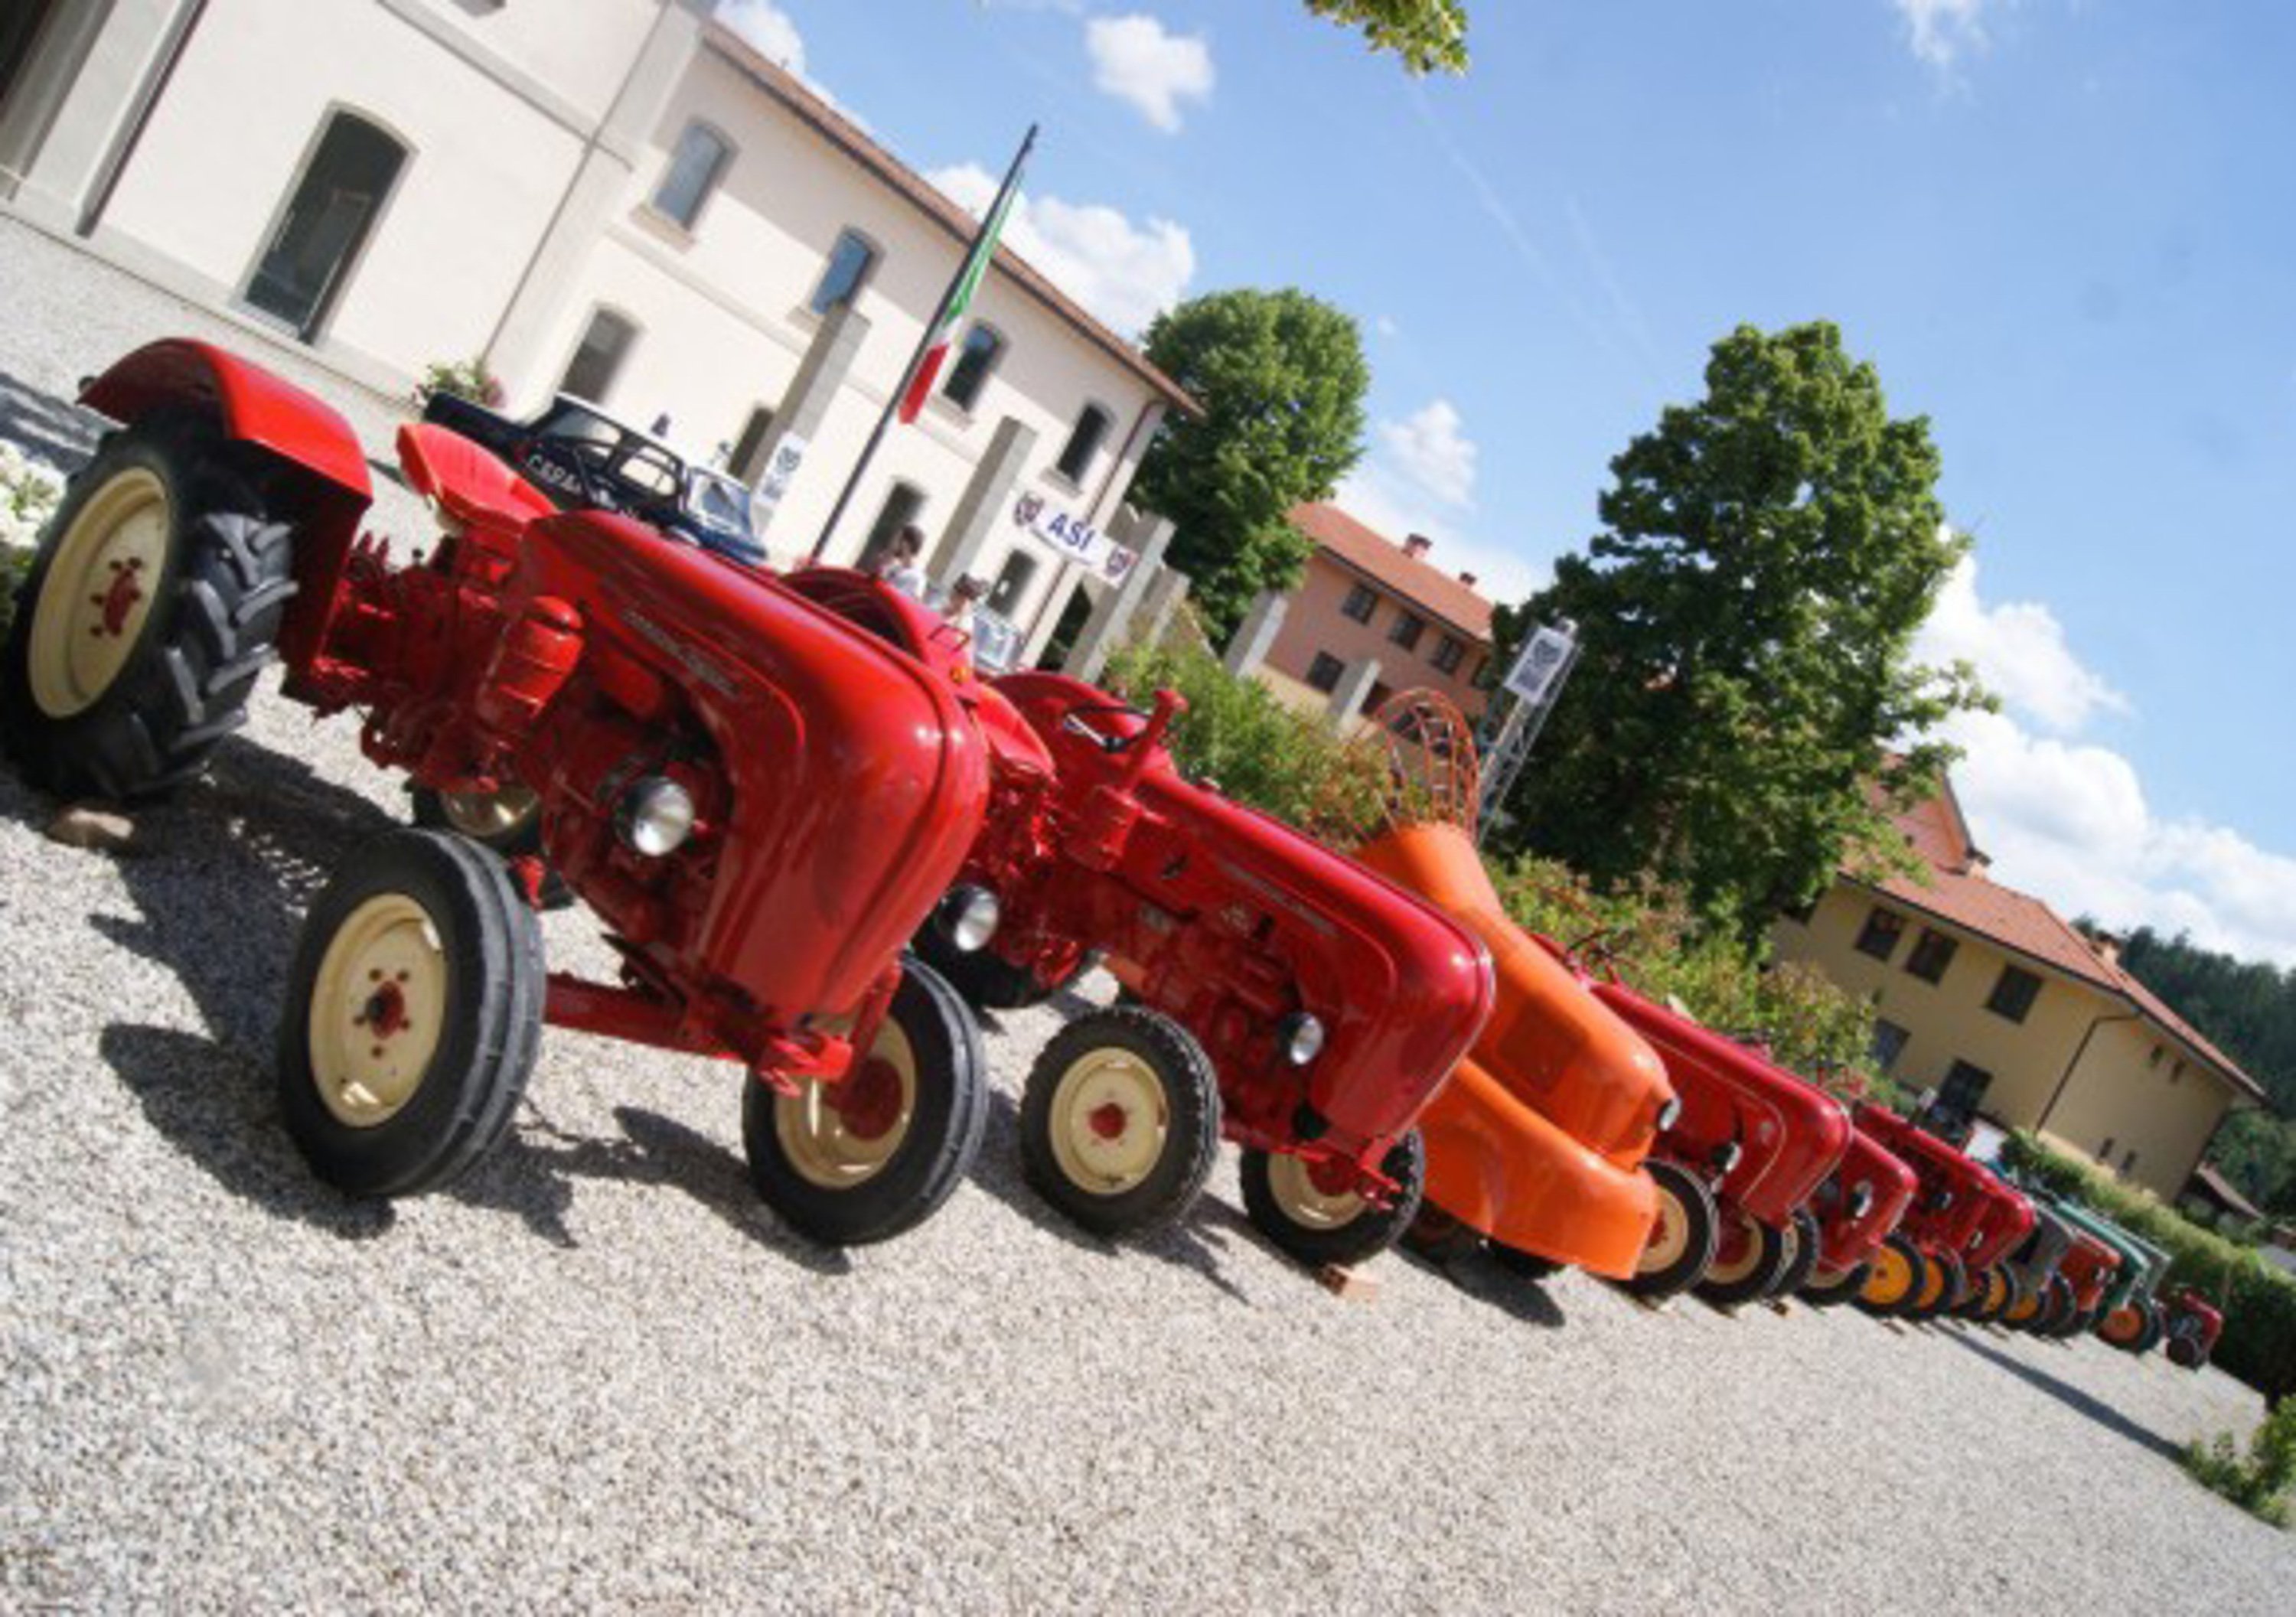 ASI Tractor Show 2015: si racconta la storia dei mezzi agricoli